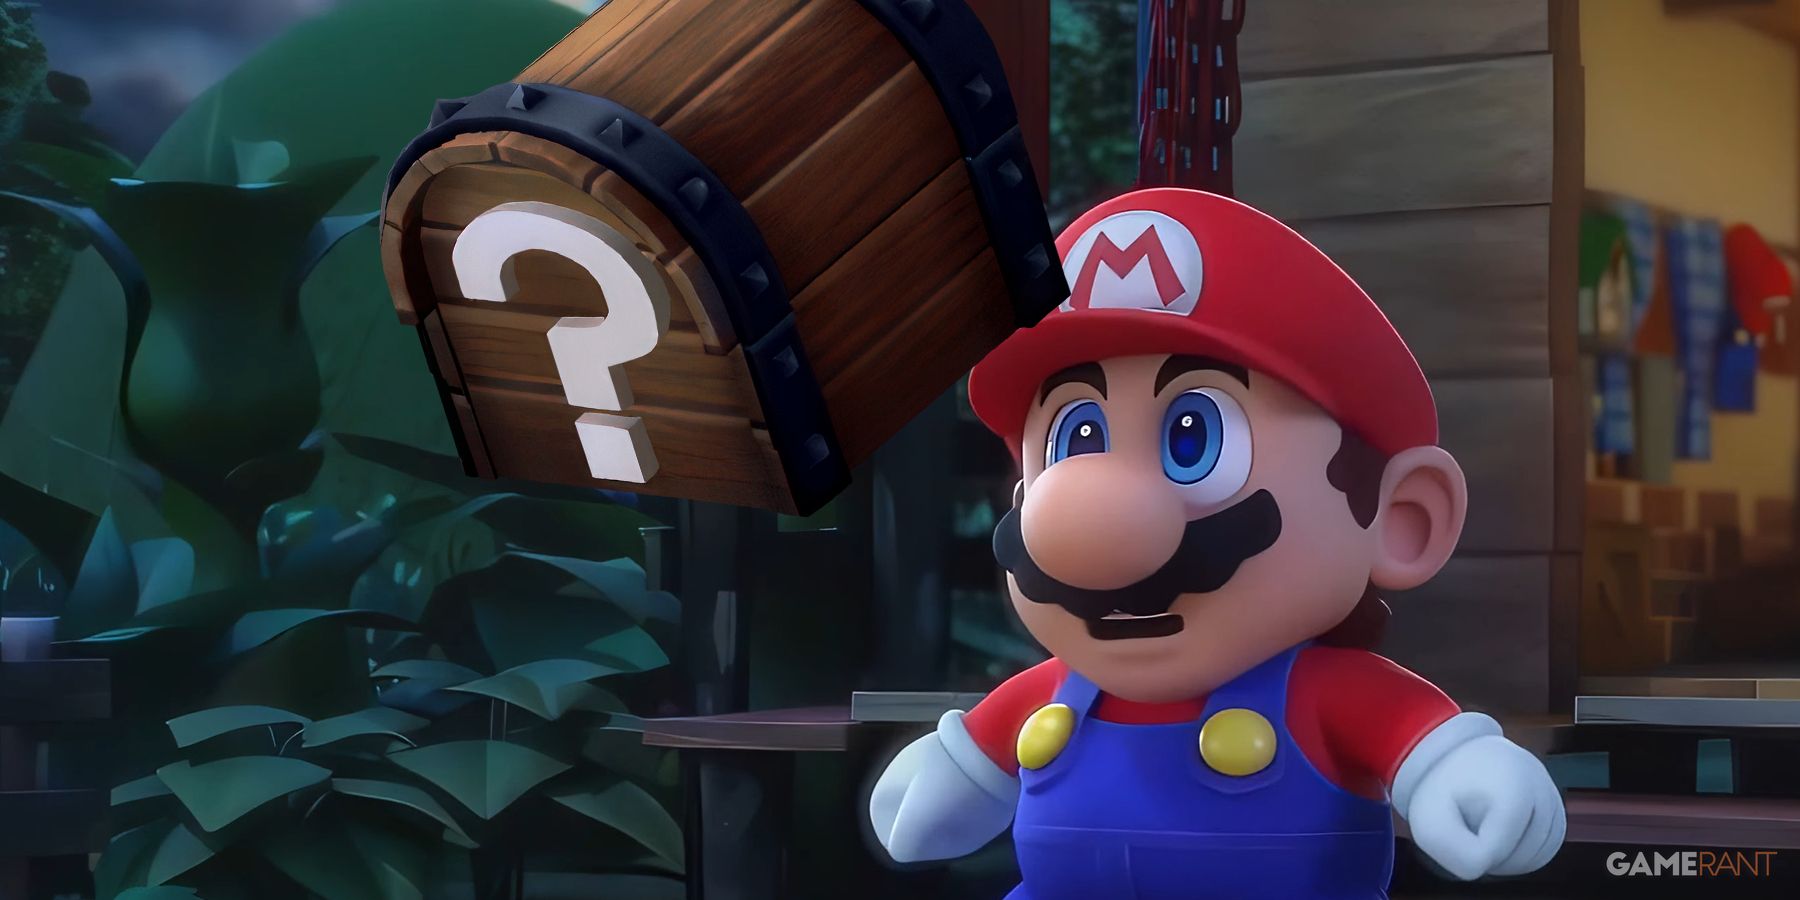 Is Super Mario RPG Multiplayer?